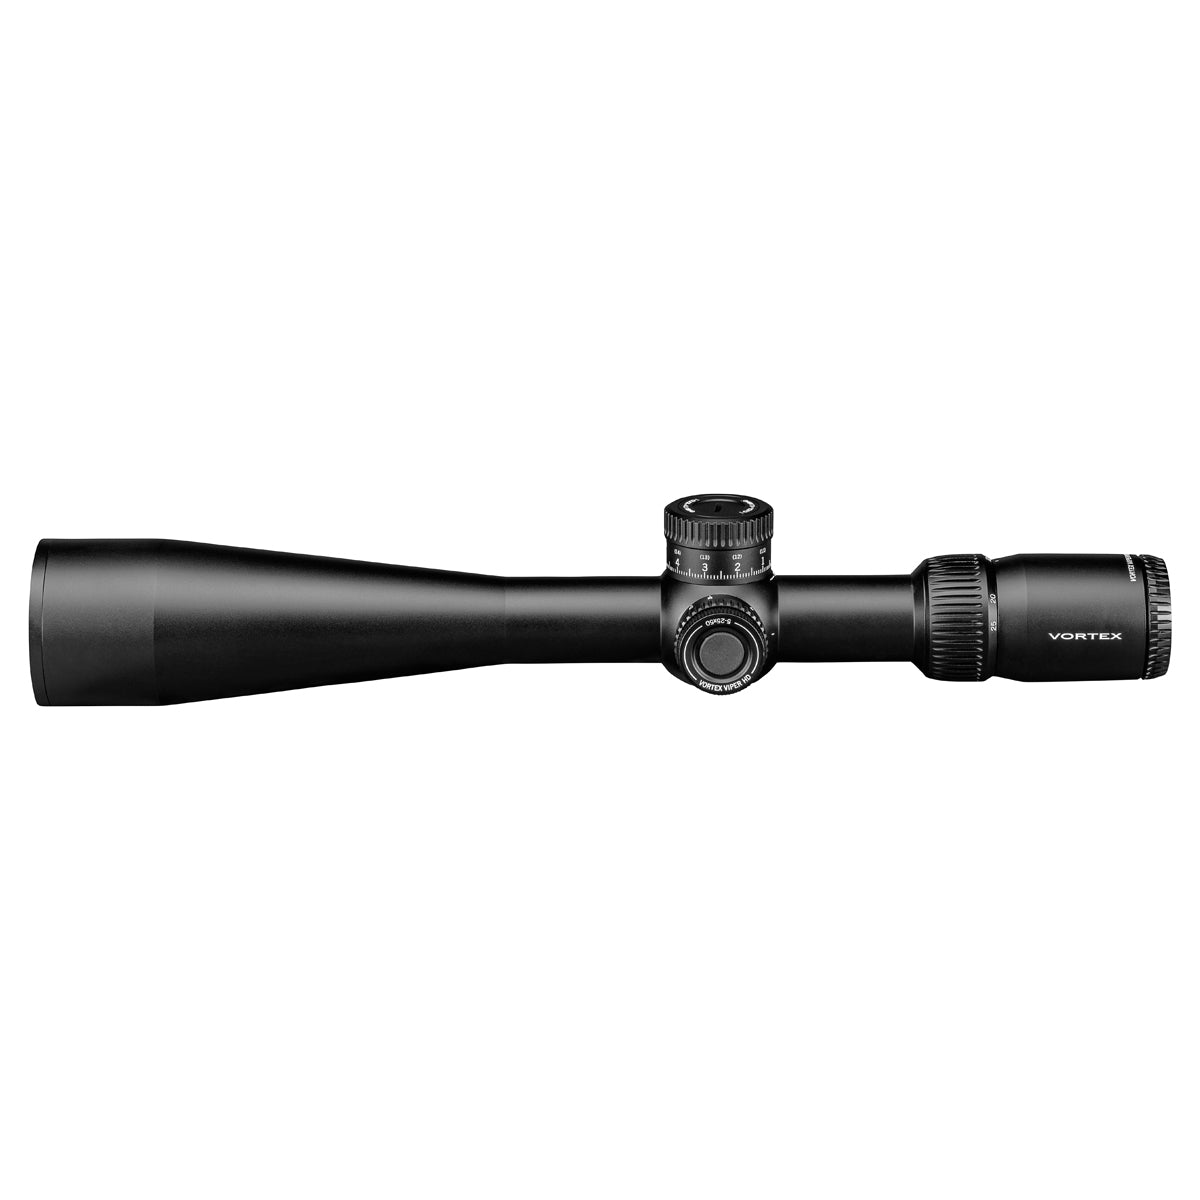 Vortex Viper HD 5-25x50 VMR-3 MRAD Riflescope